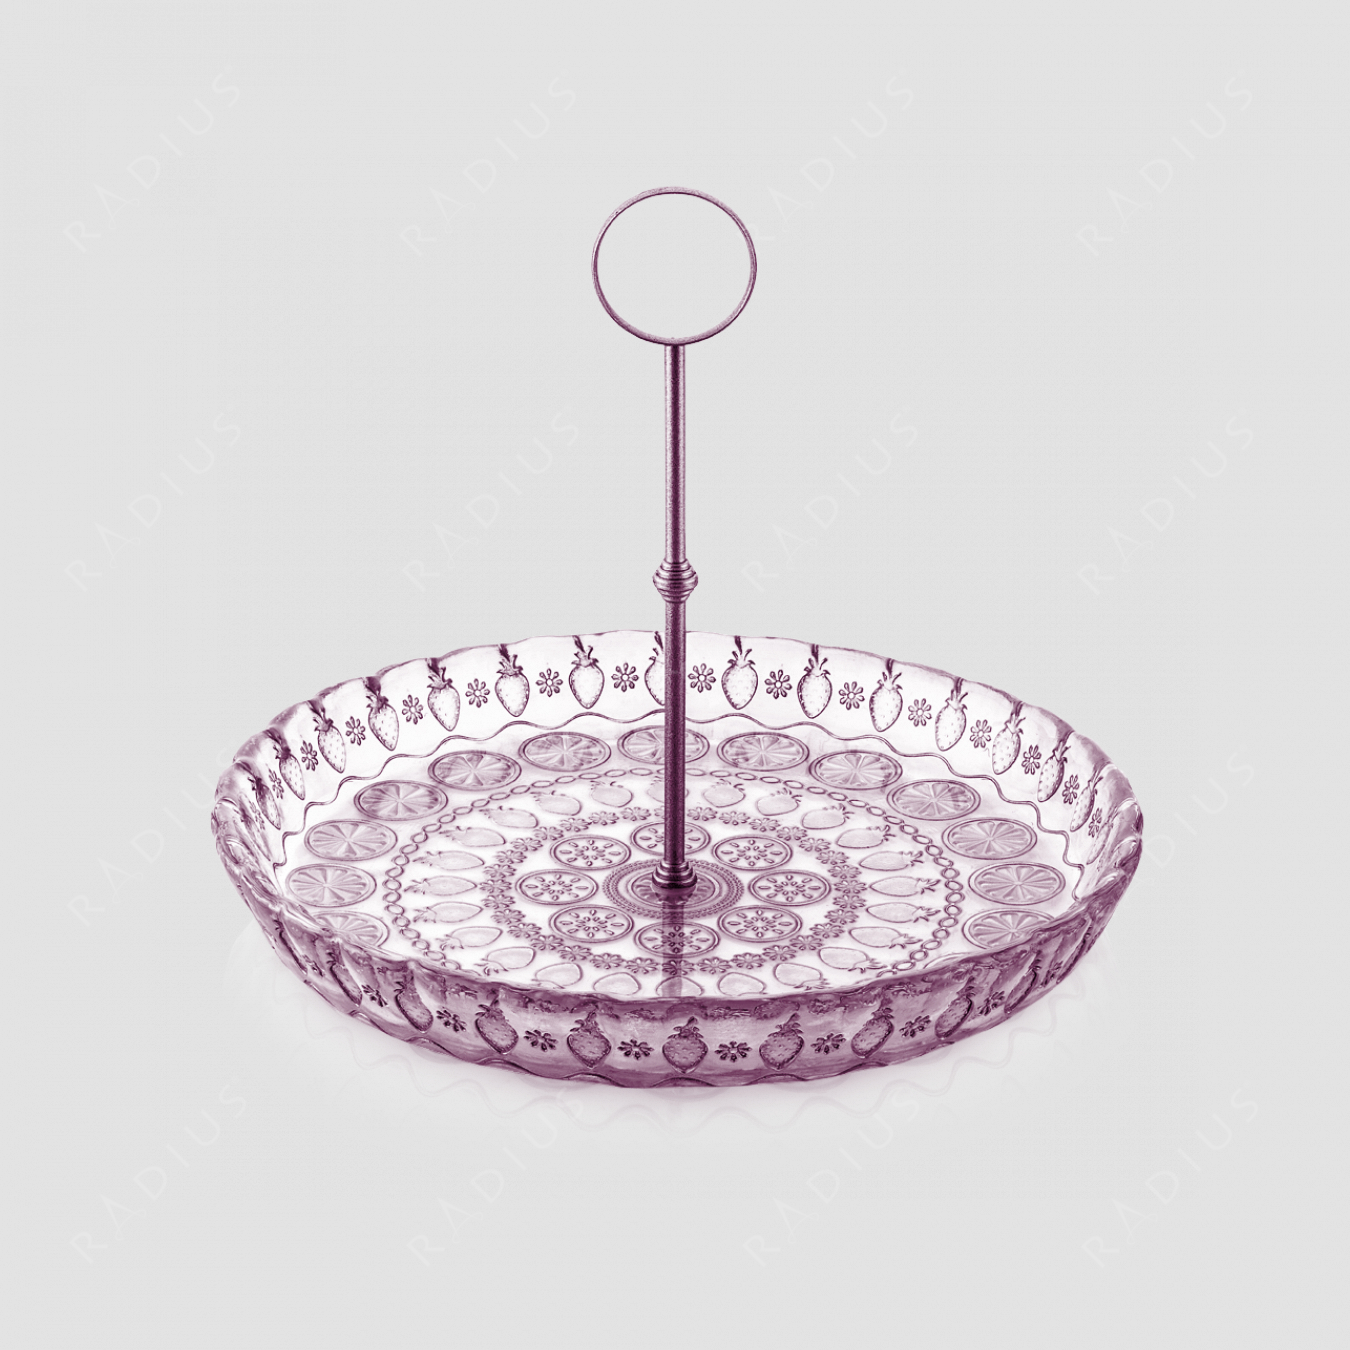 Чаша для фруктов с металлической стойкой, диаметр 32 см, цвет аметист, стекло, серия Vitaminic, IVV, Италия